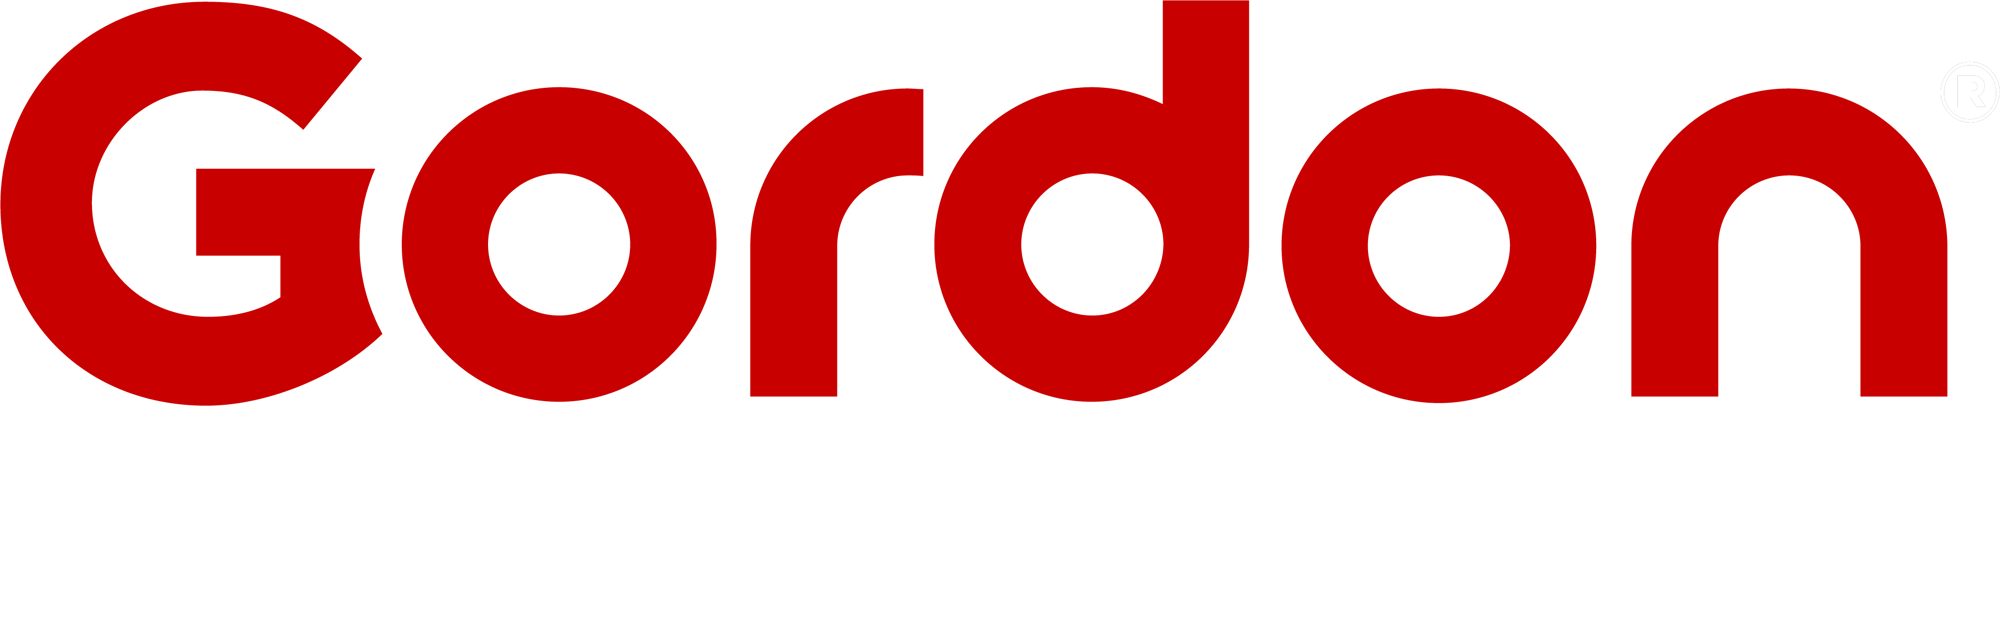 Gordon_Food_Service-Logo-white